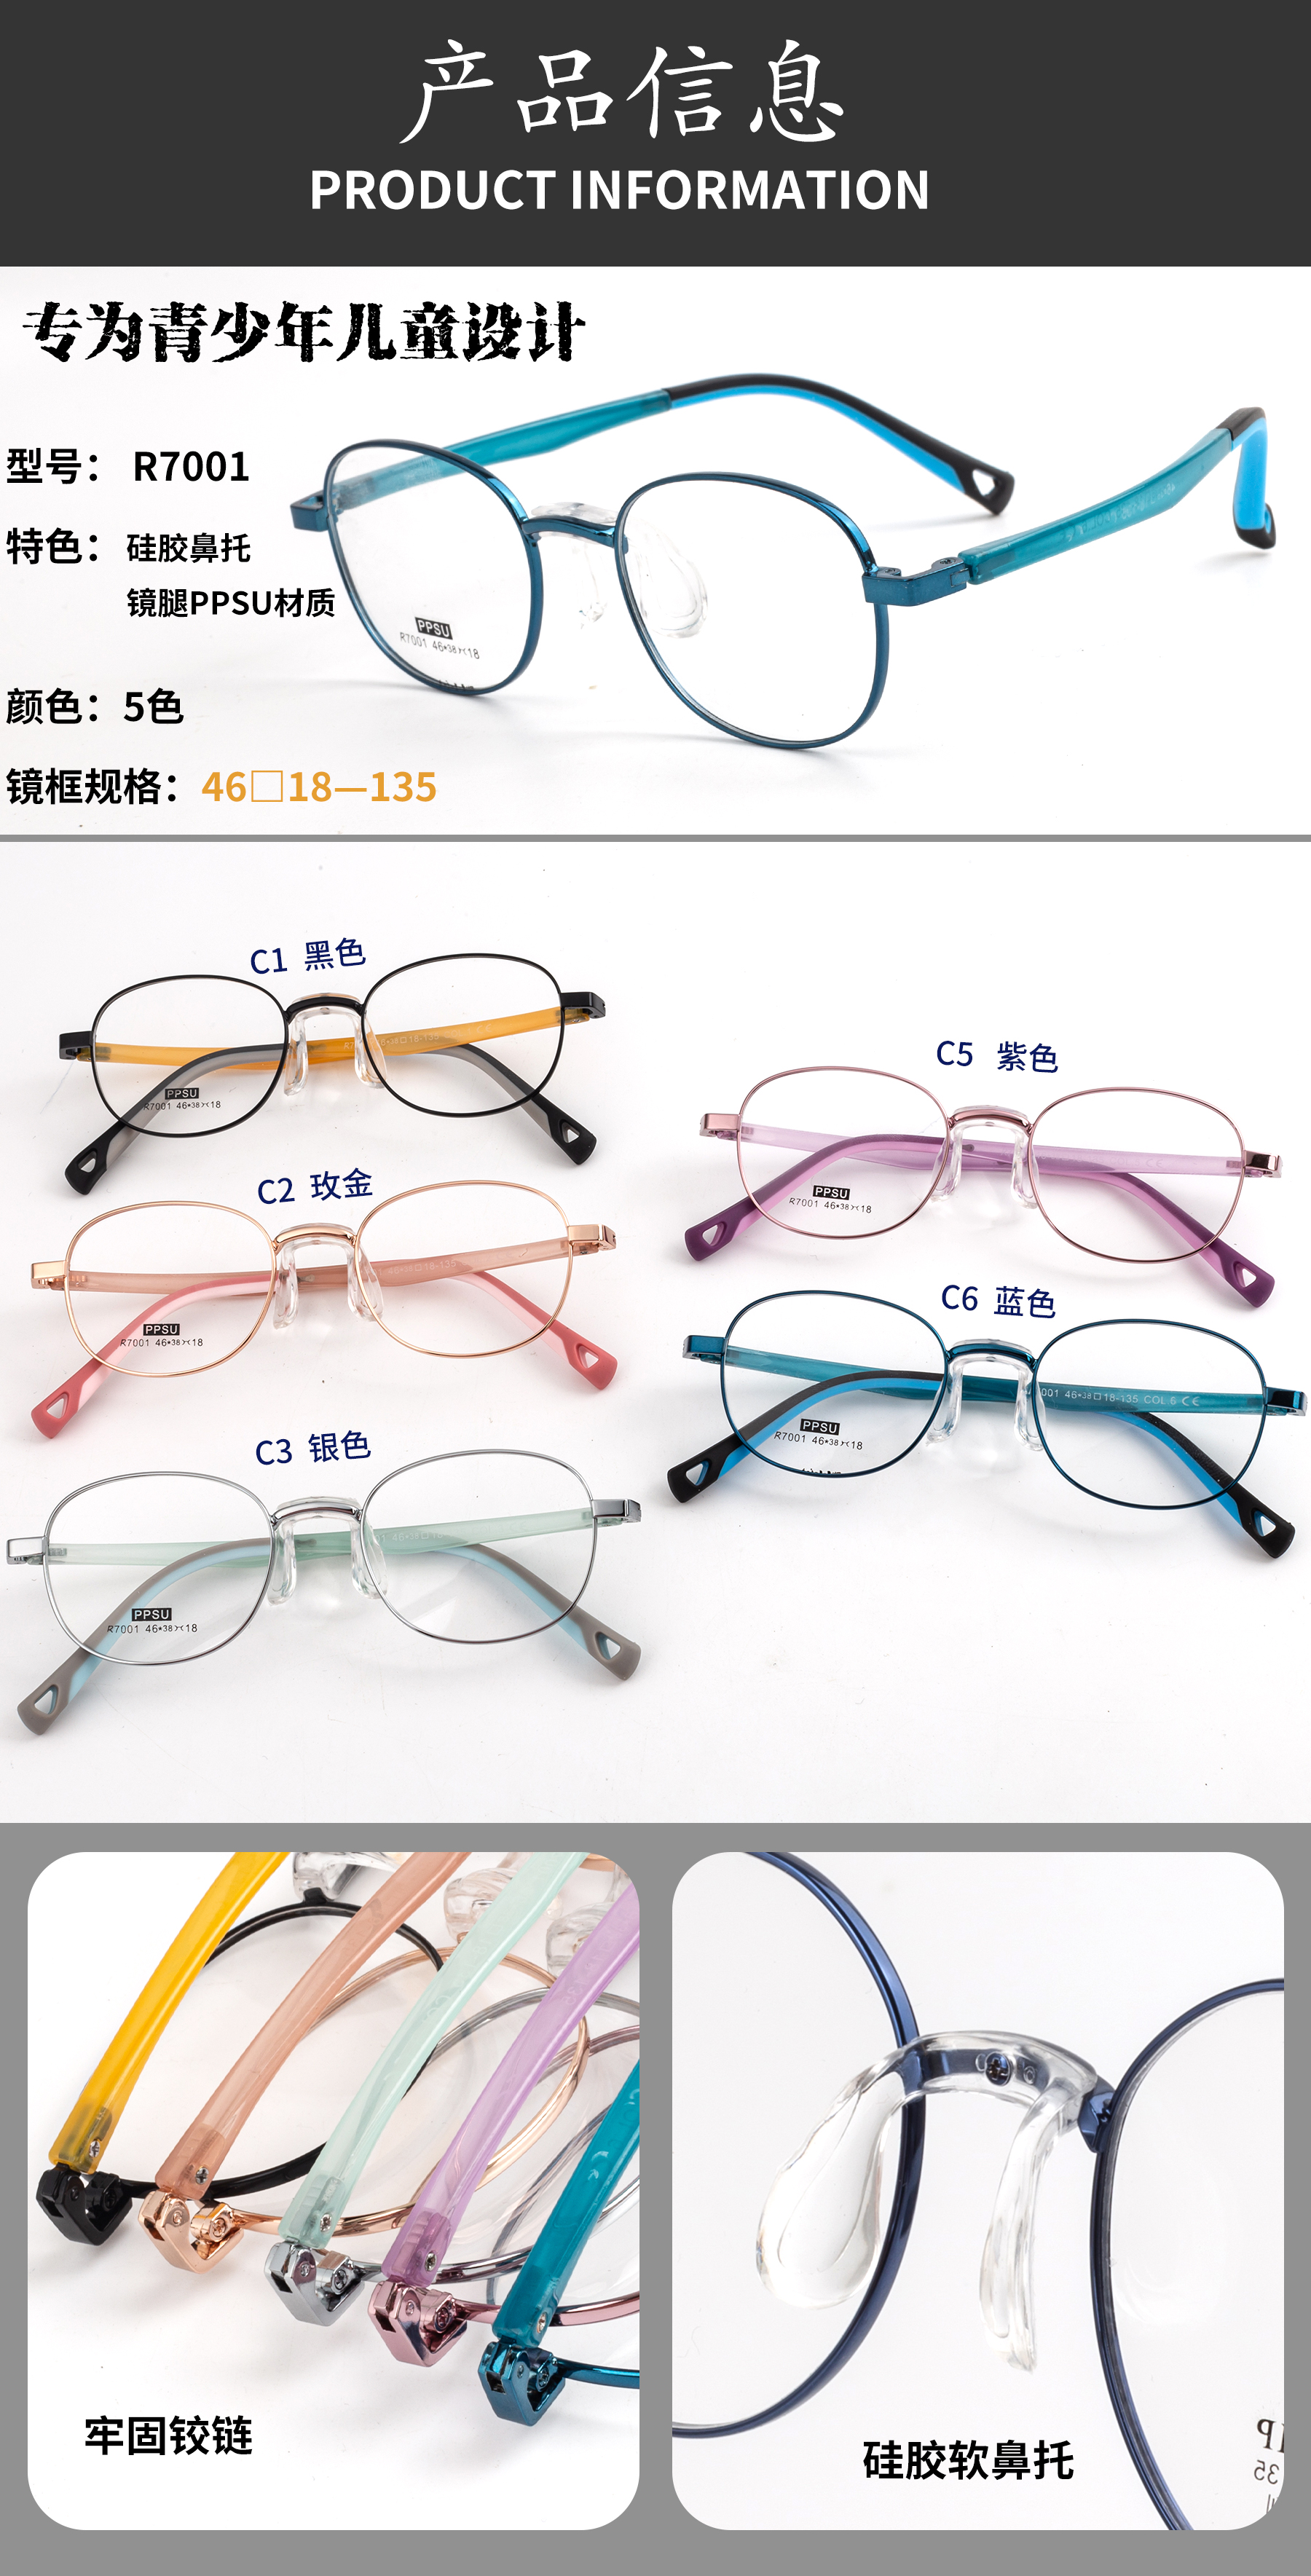 kids glasses